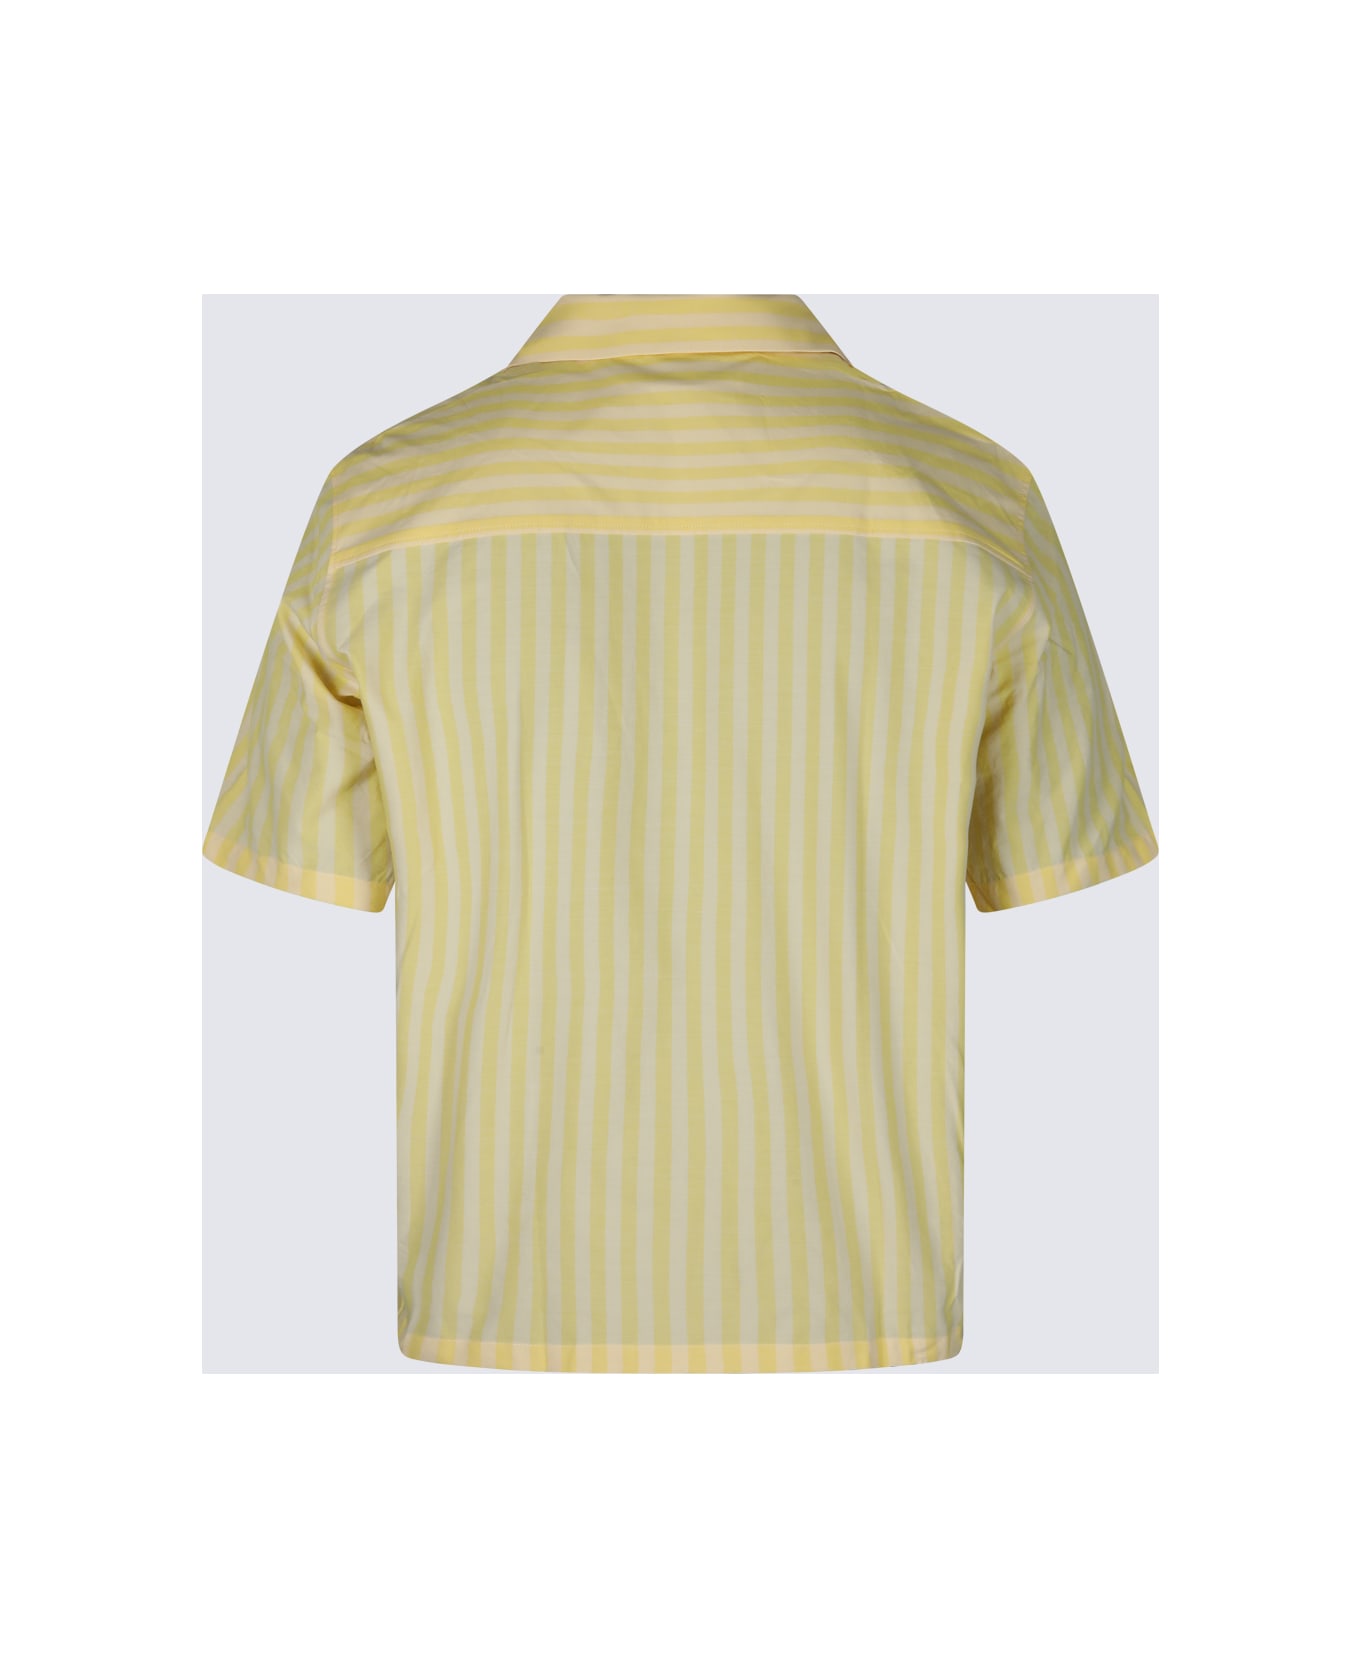 Maison Kitsuné Light Yellow Shirt - S720 LIGHT YELLOW STRIPES